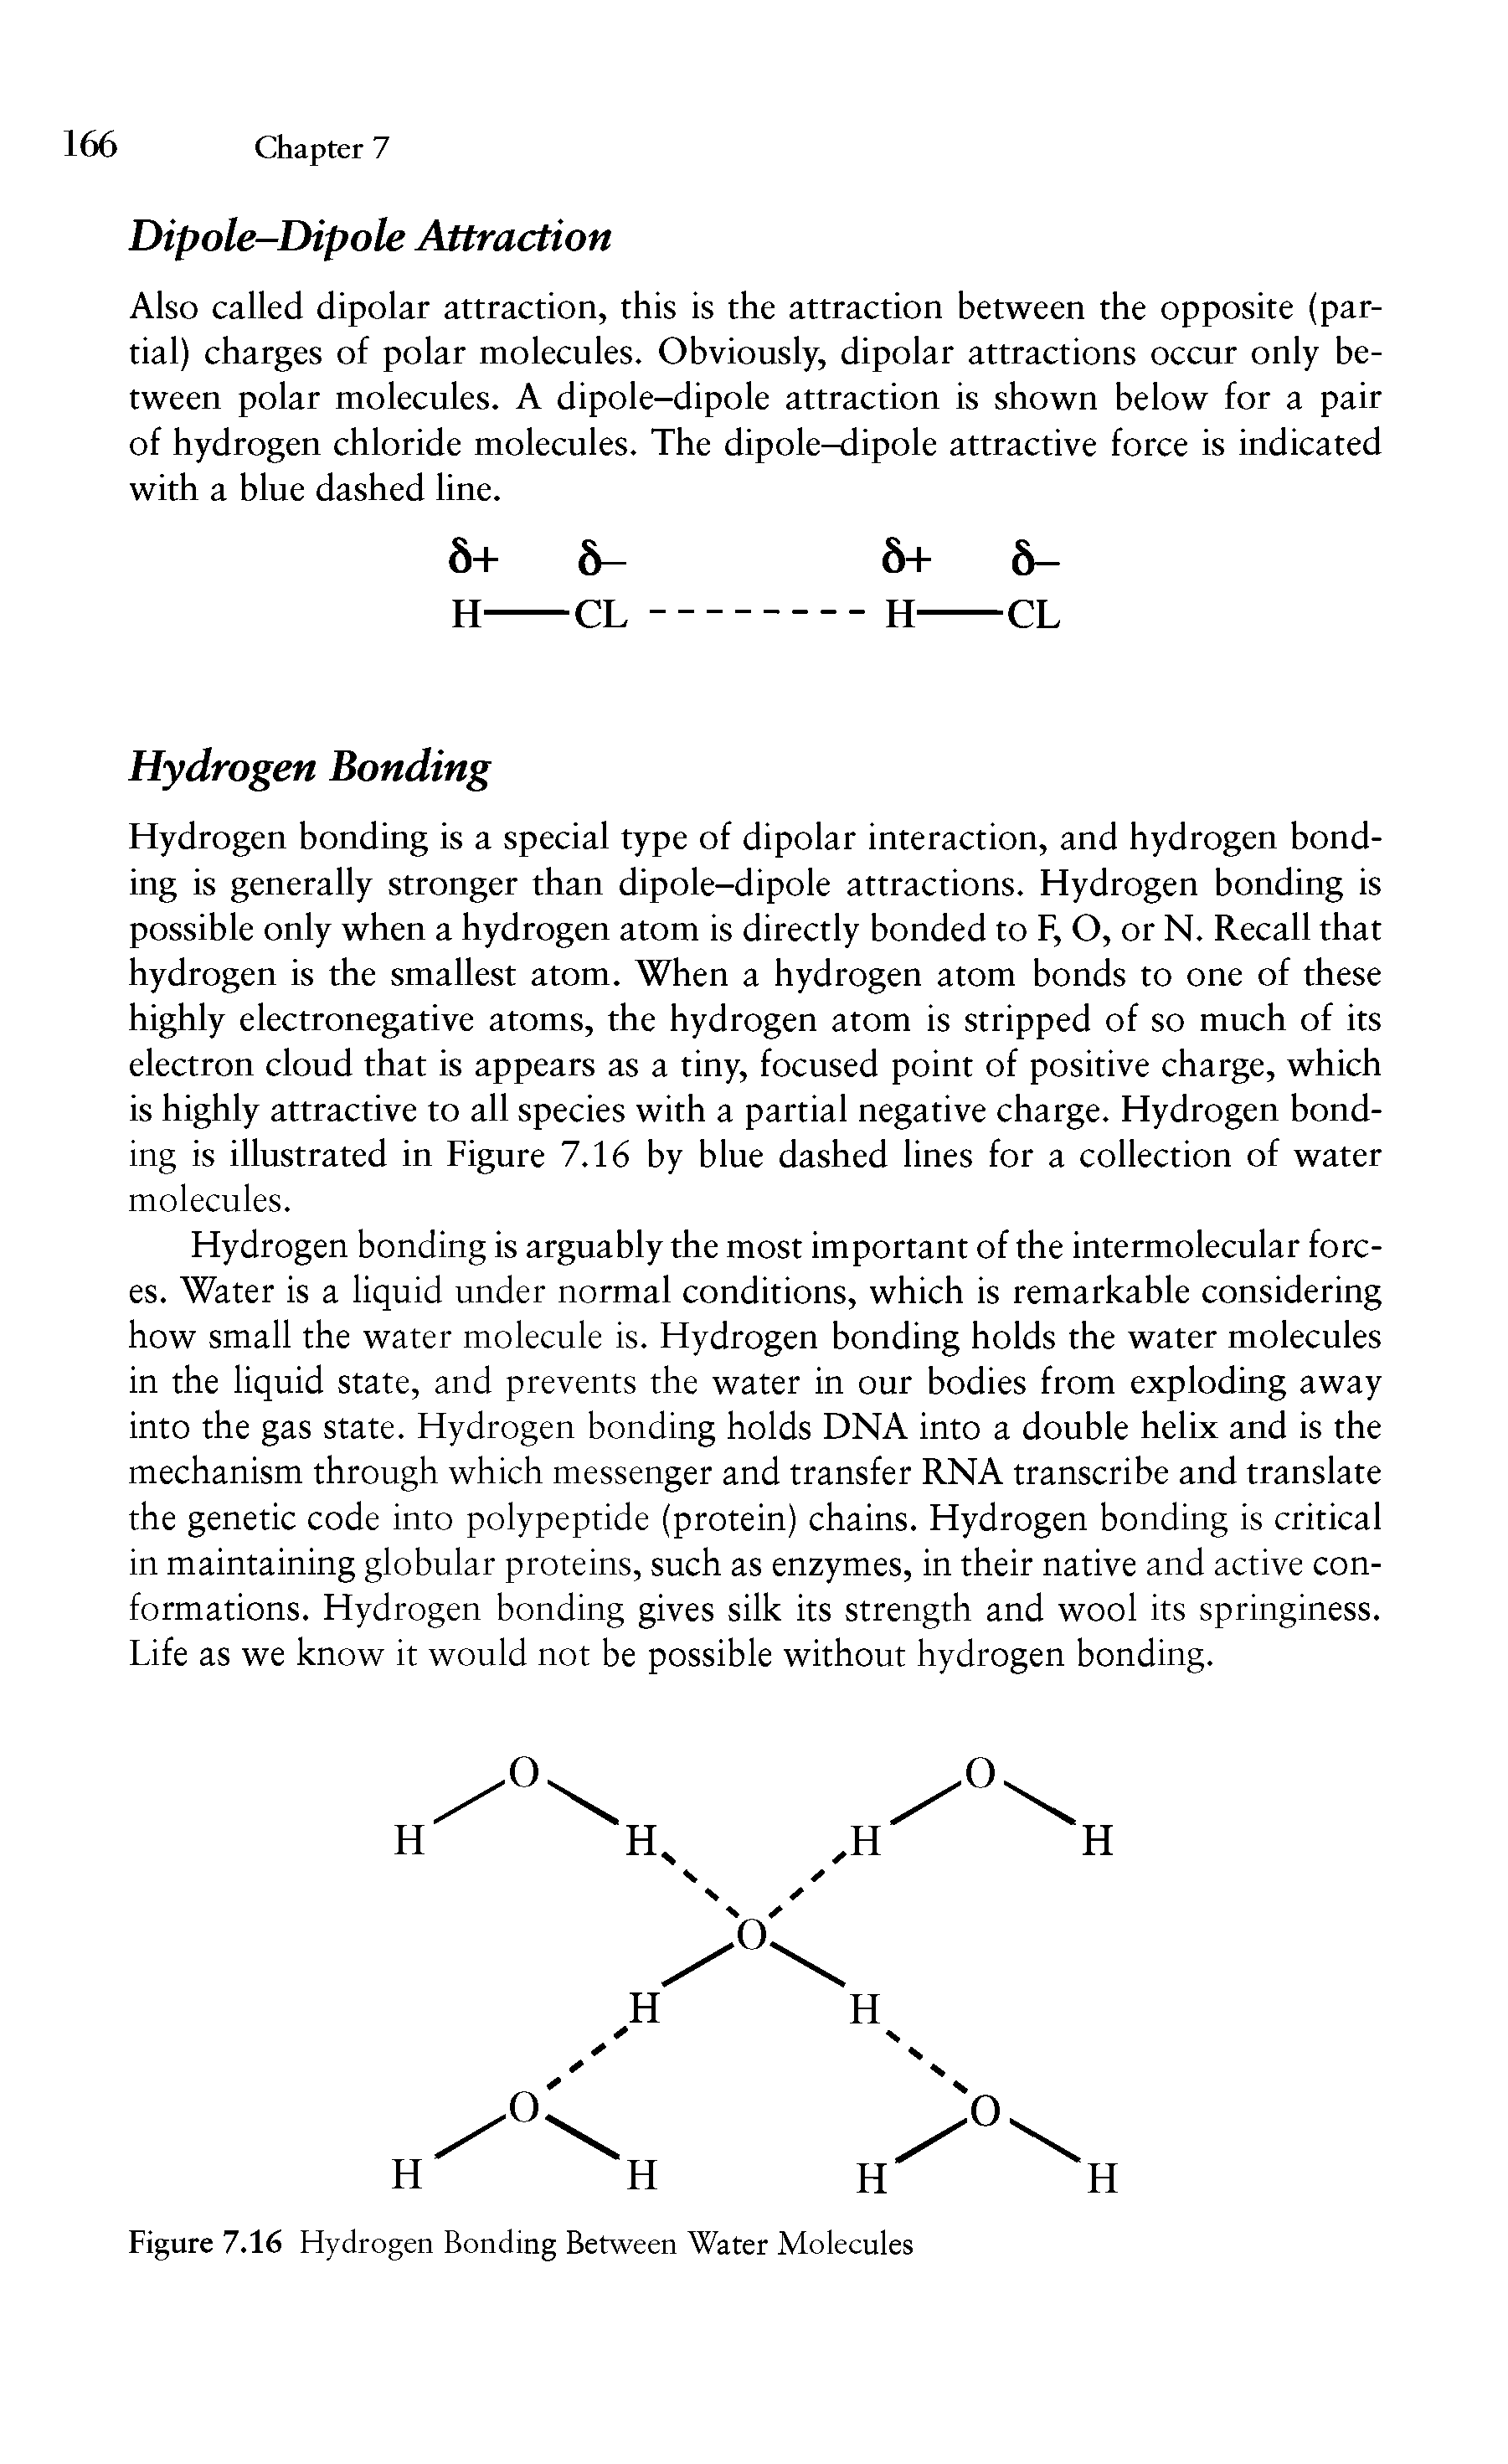 Figure 7.16 Hydrogen Bonding Between Water Molecules...